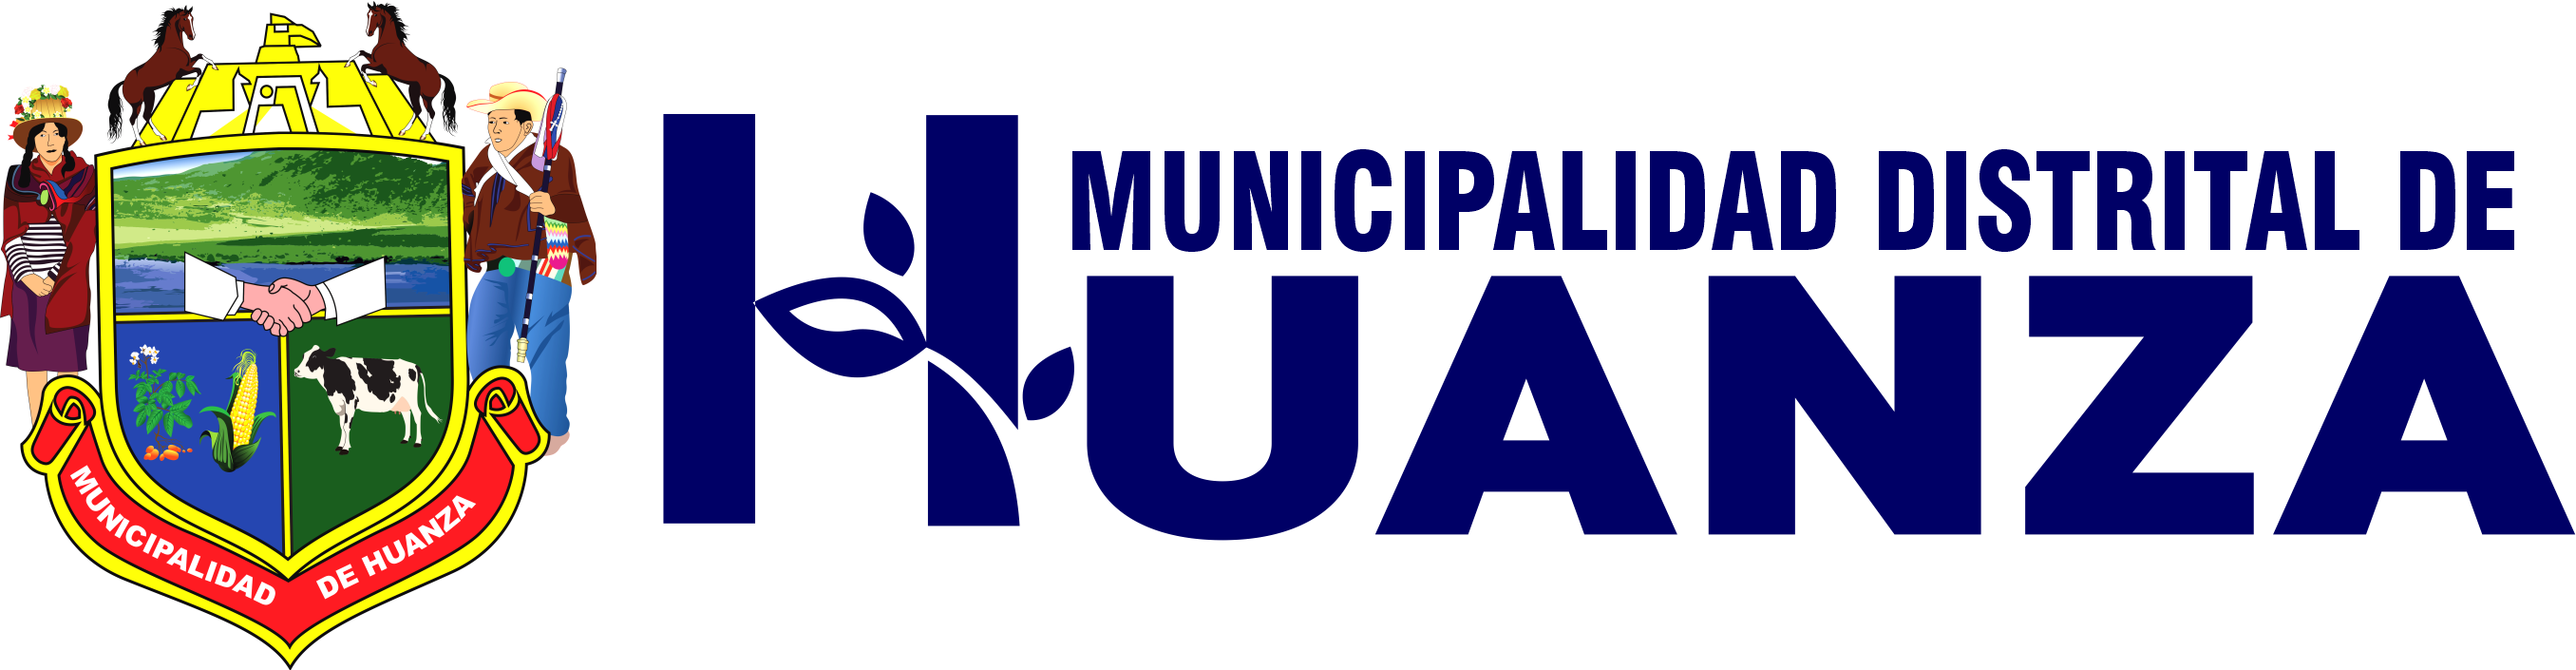 Municipalidad de Huanza